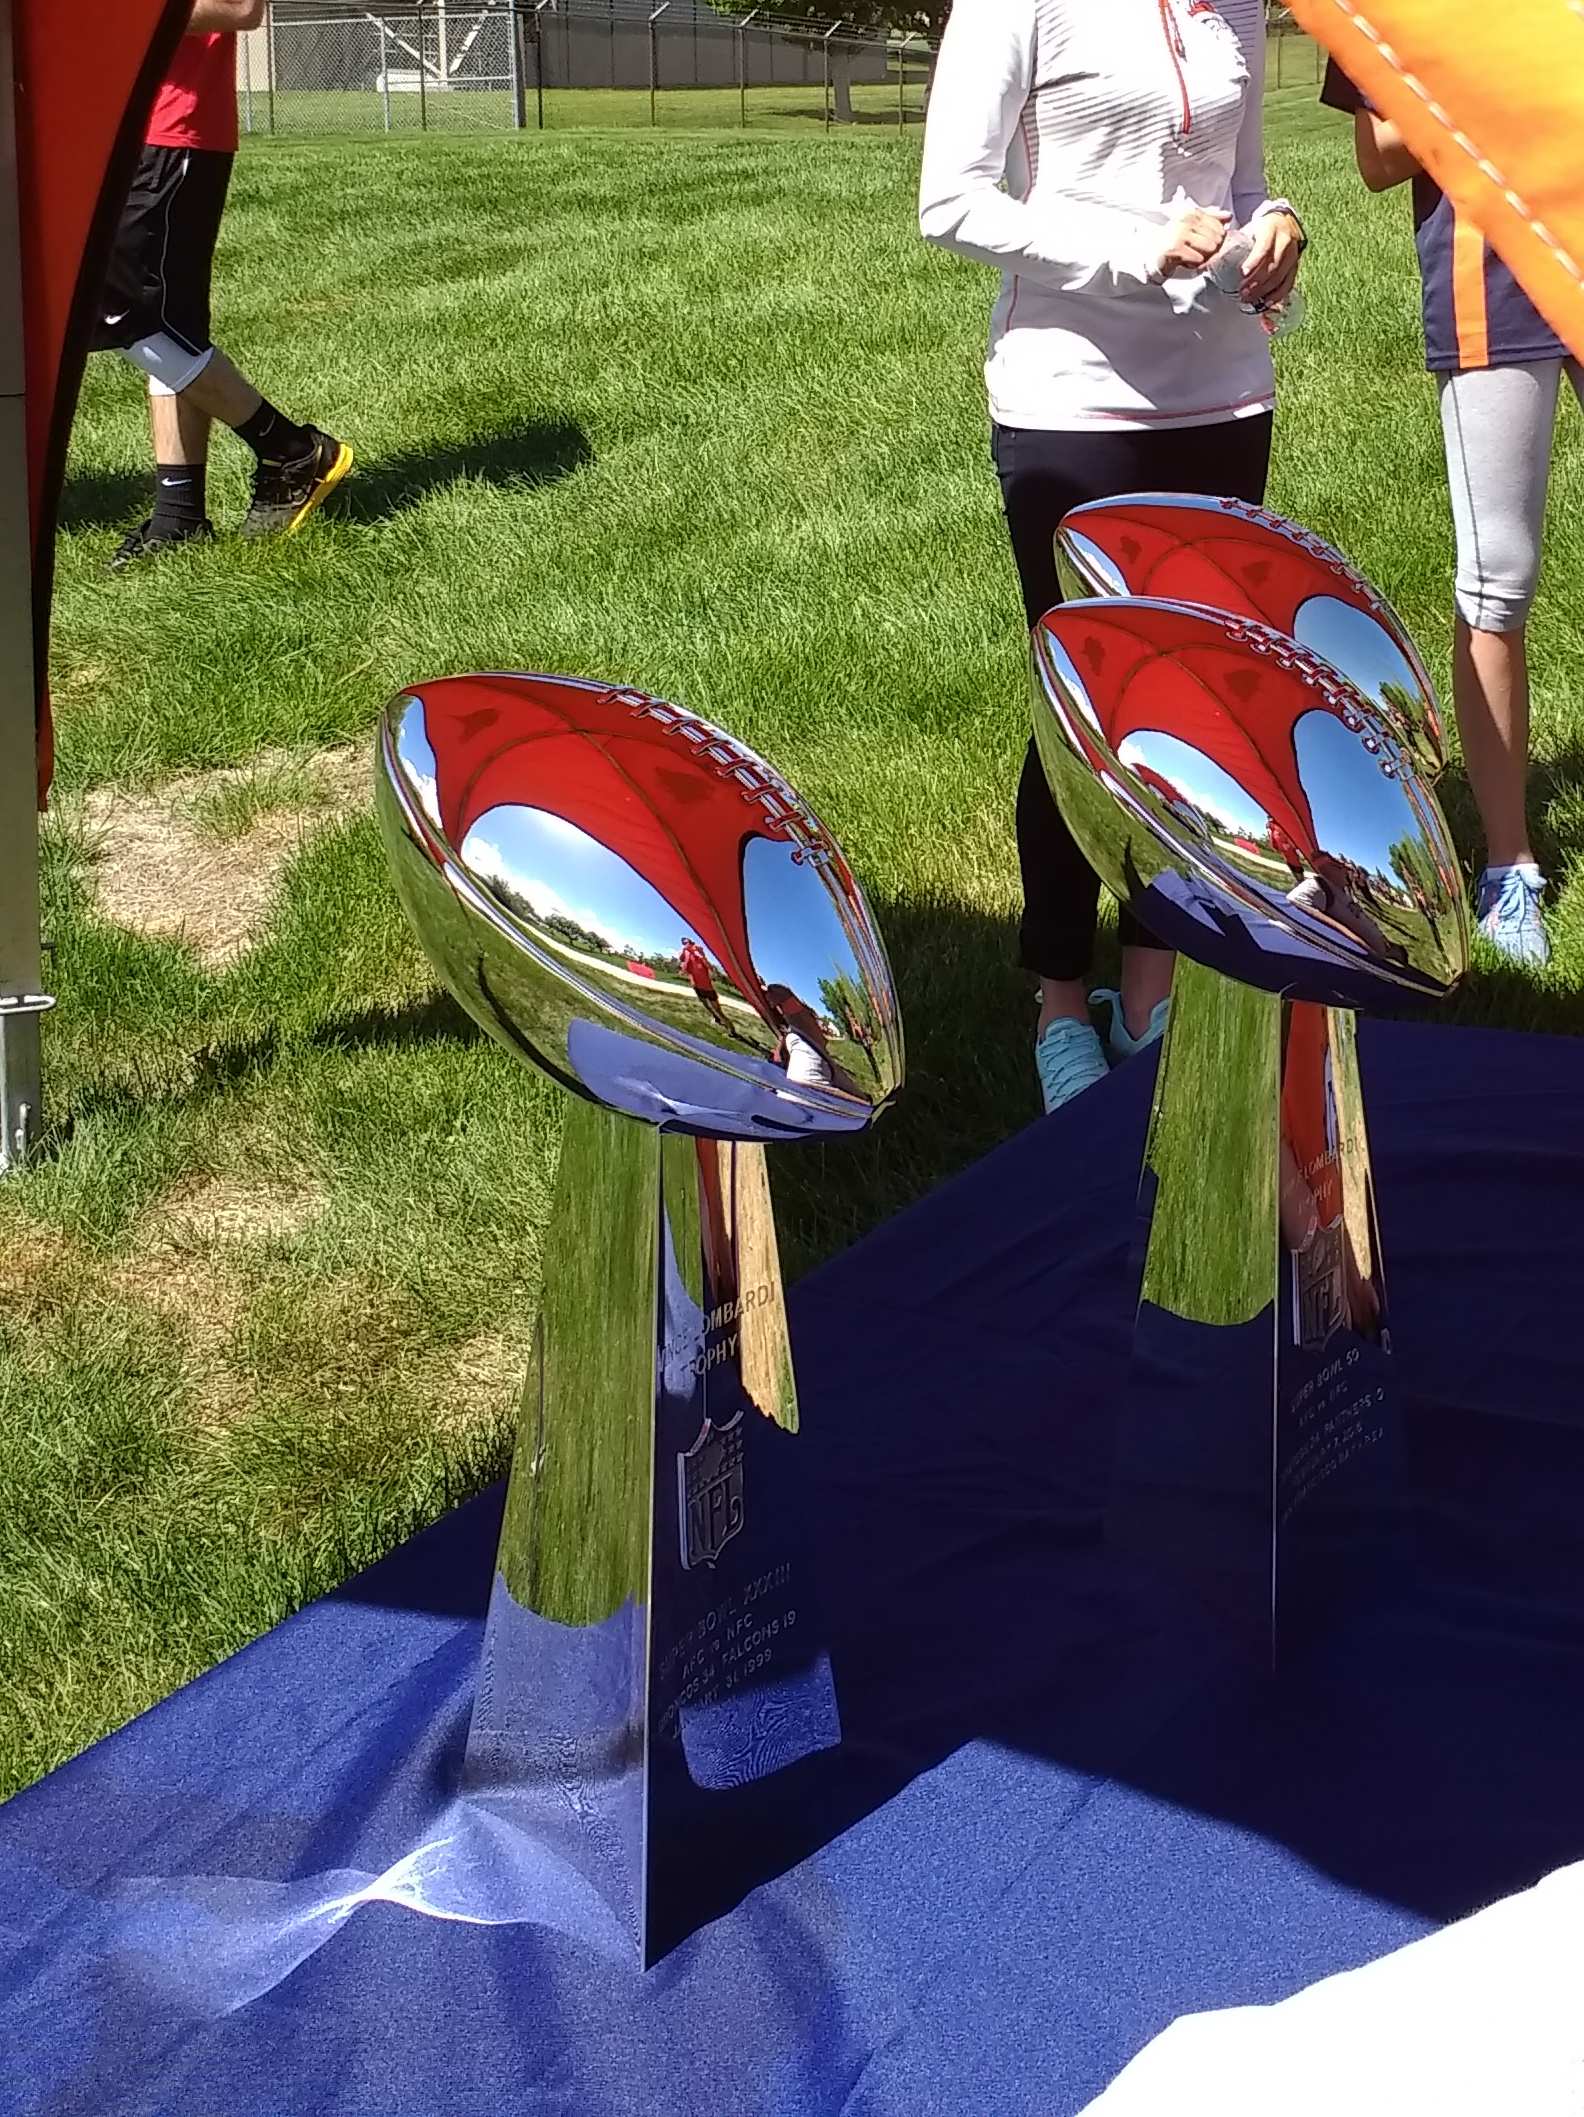 The Denver Broncos three Super Bowl trophies.